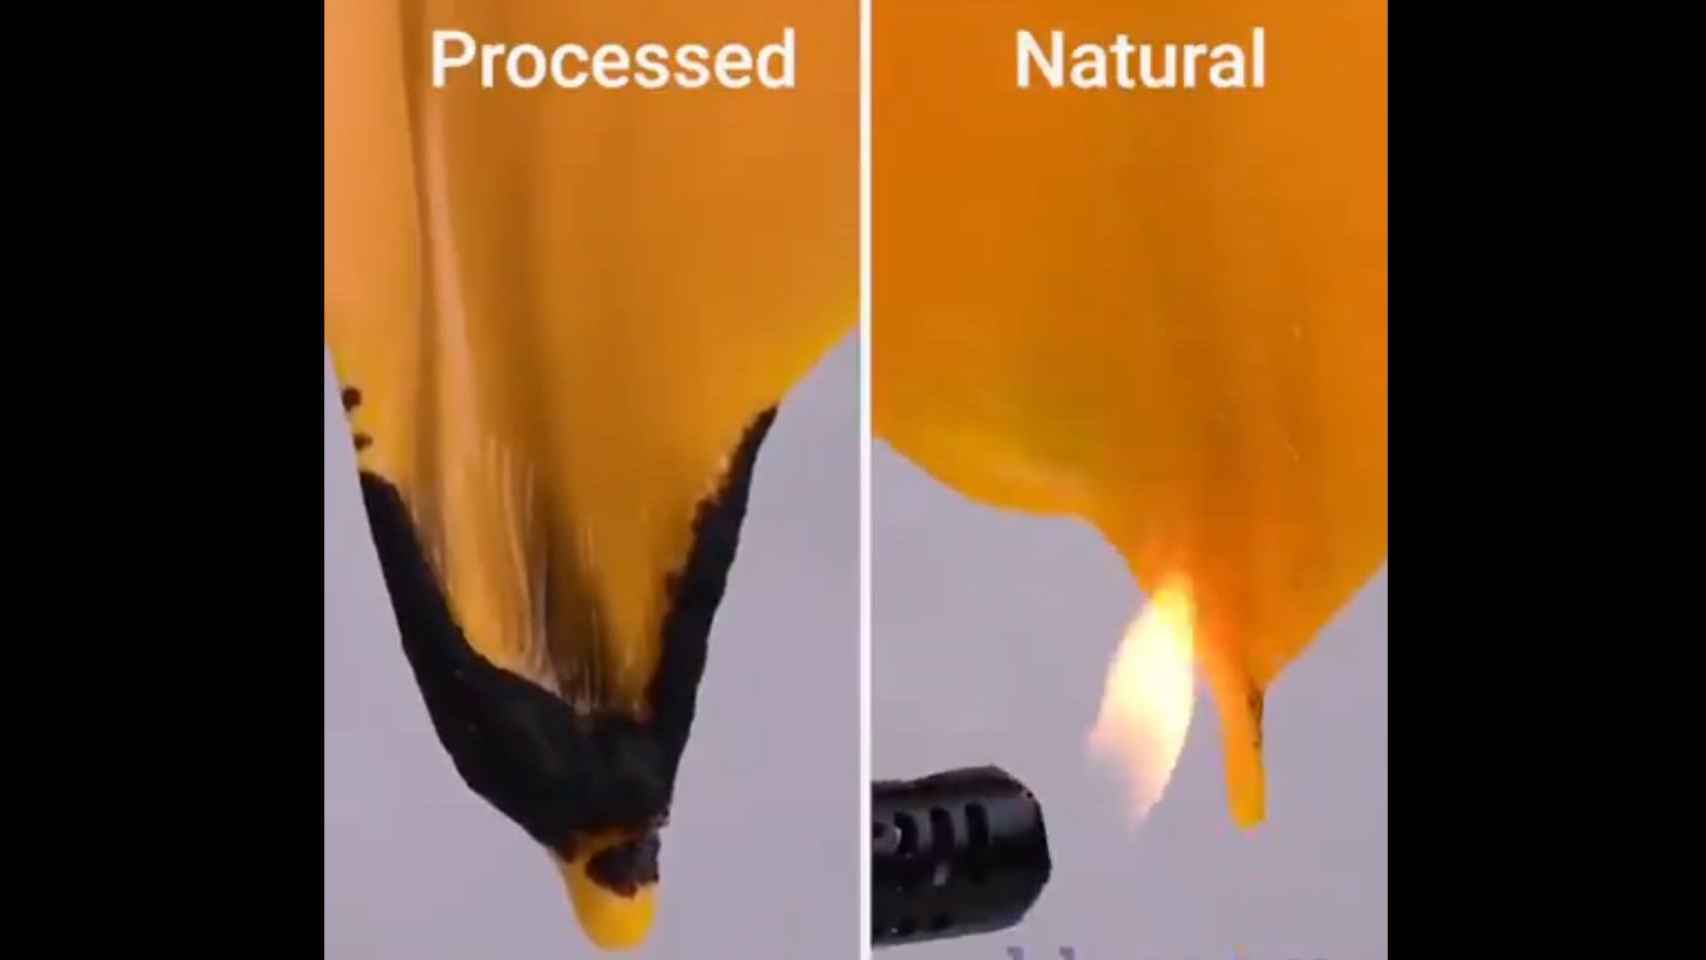 El vídeo quema lonchas de queso para demostrar que el procesado no se funde tan fácilmente